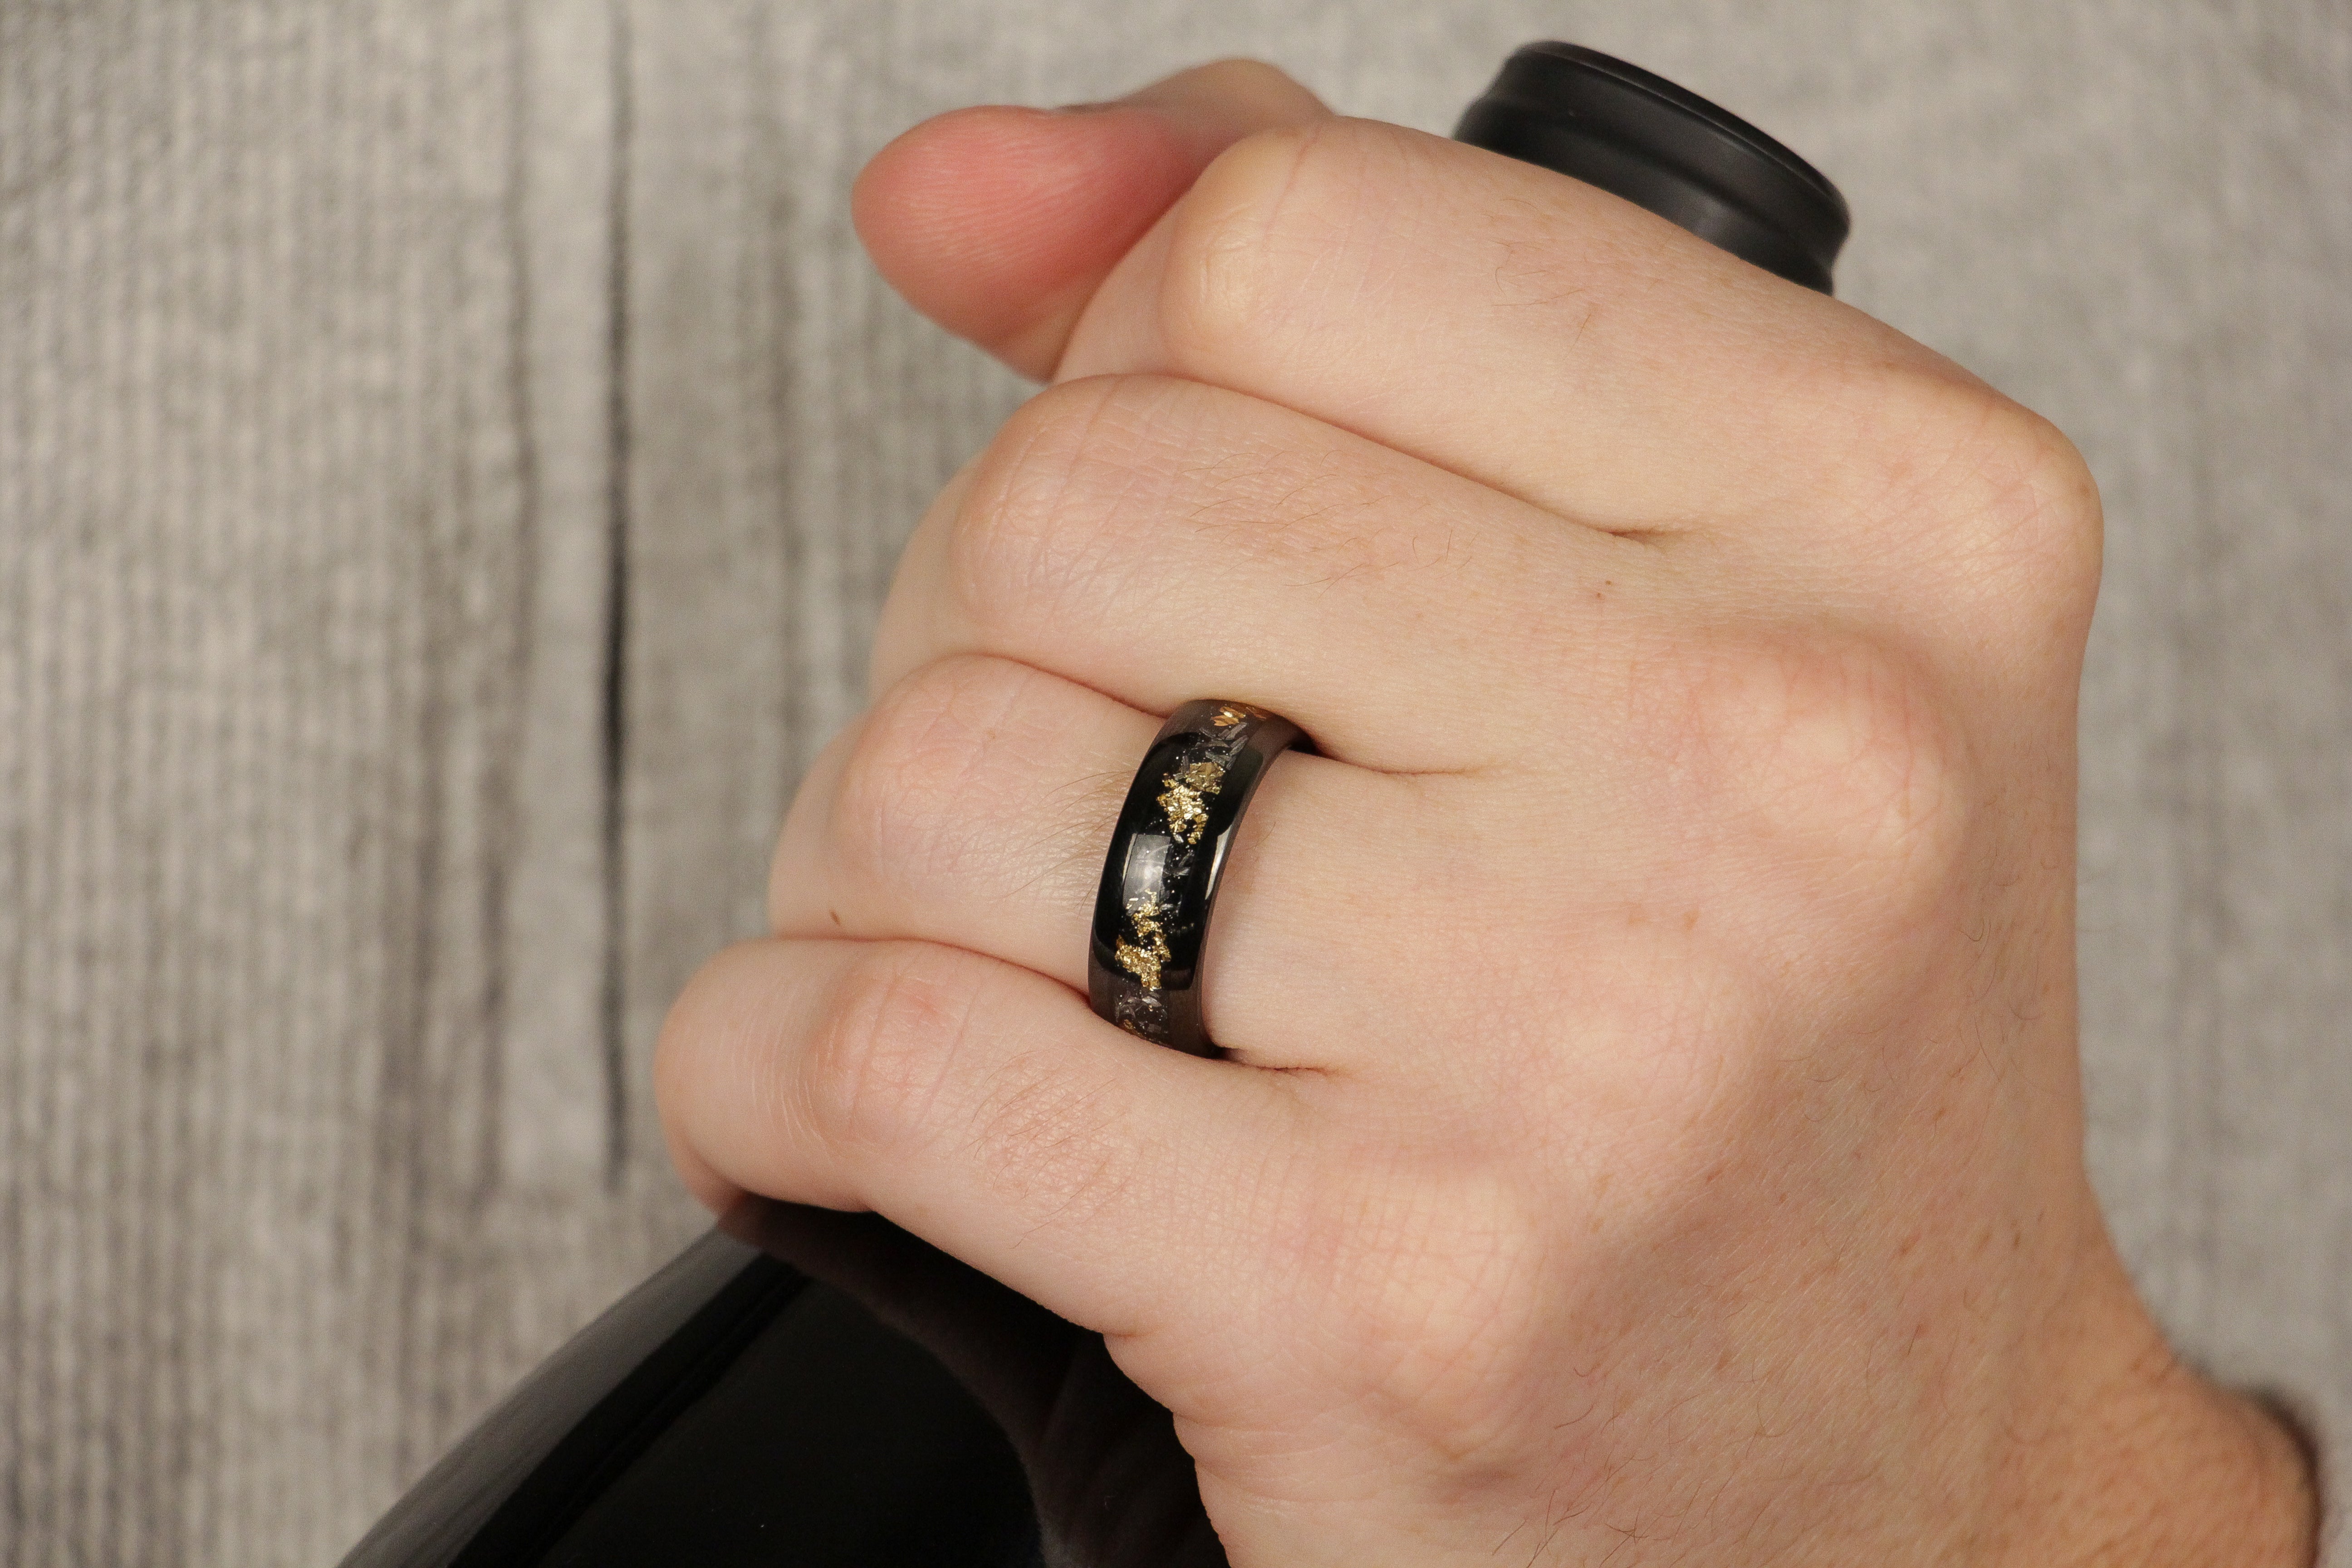 8mm black tungsten ring, gold leaf meteorite sandstone inlay, mens hand photo wedding band